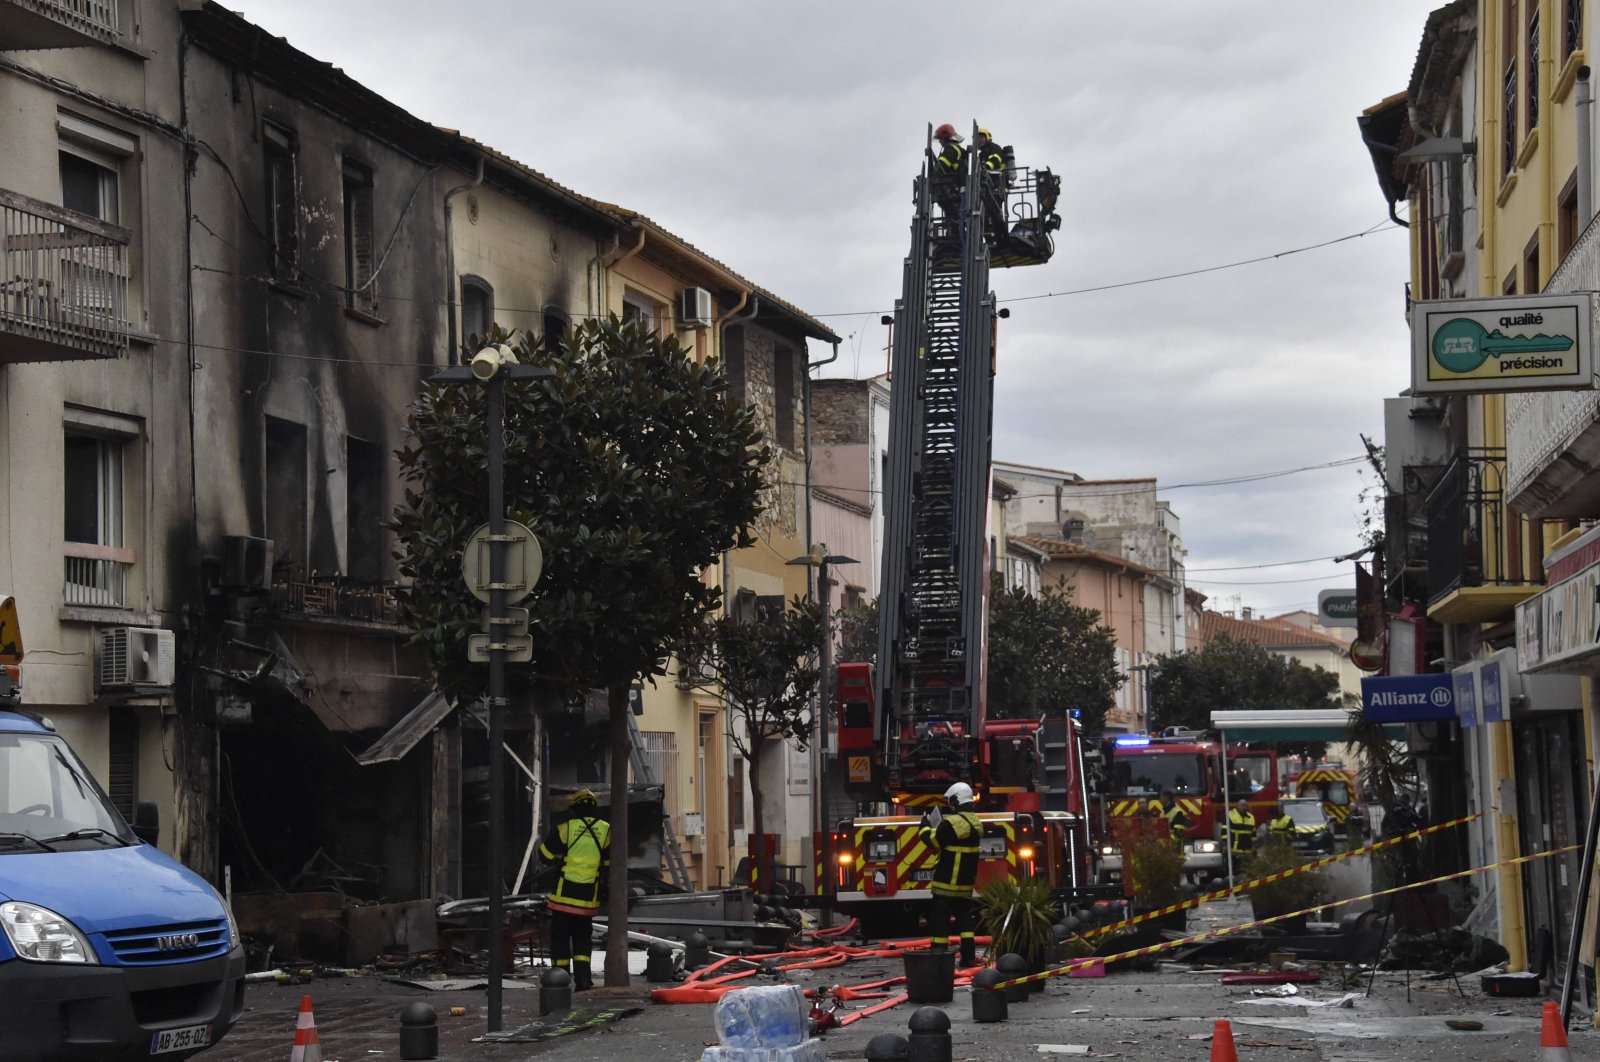 Rescue teams search the rubble for missing inhabitants after an explosion in Saint-Laurent-de-la-Salaque, France, Feb. 14, 2022. (AFP Photo)